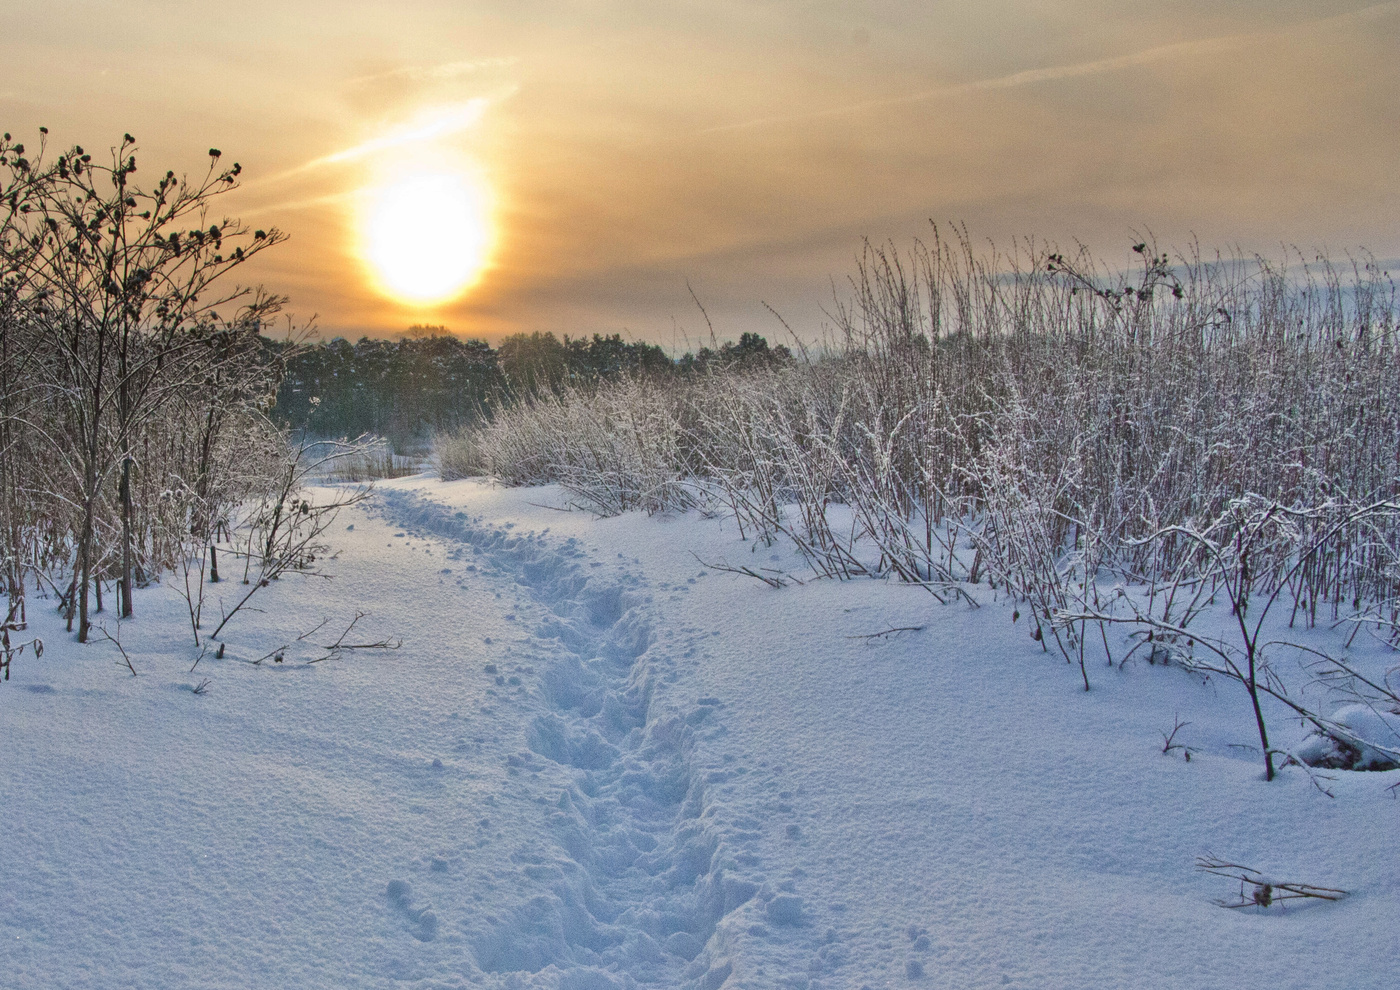 Снежок утром. Снежное утро. Снежное утро фото. Мороз и солнце с тропинкой. Фото на снегу яркая Ослепительная Солнечная дорожка.